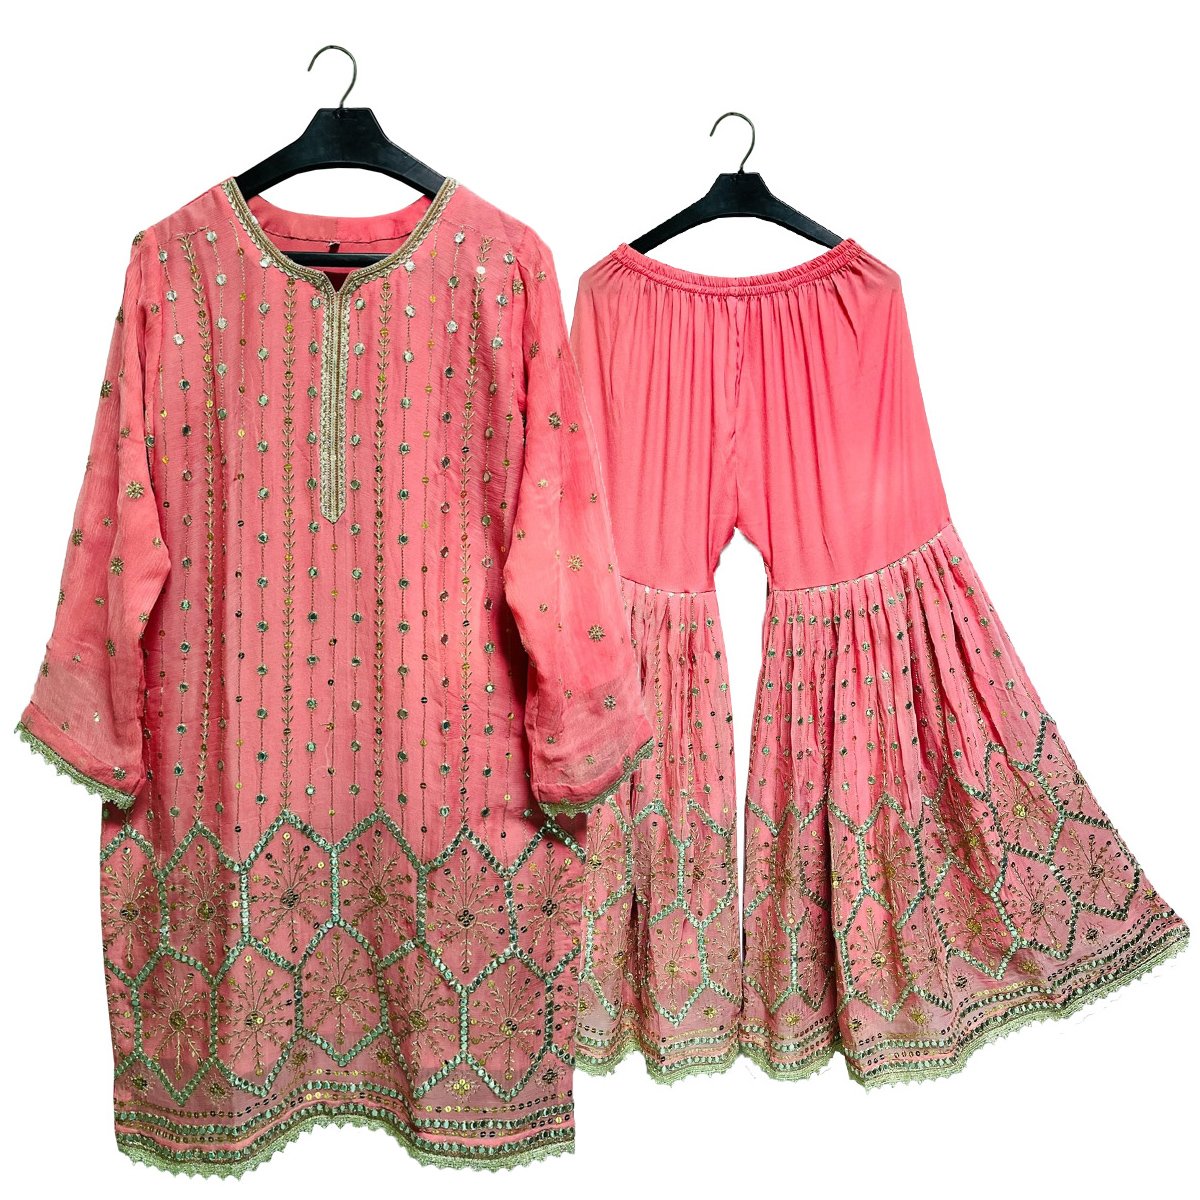 Palazzo Pakistani Suits - Free Shipping on Palazzo Pakistani Clothing Online  in USA